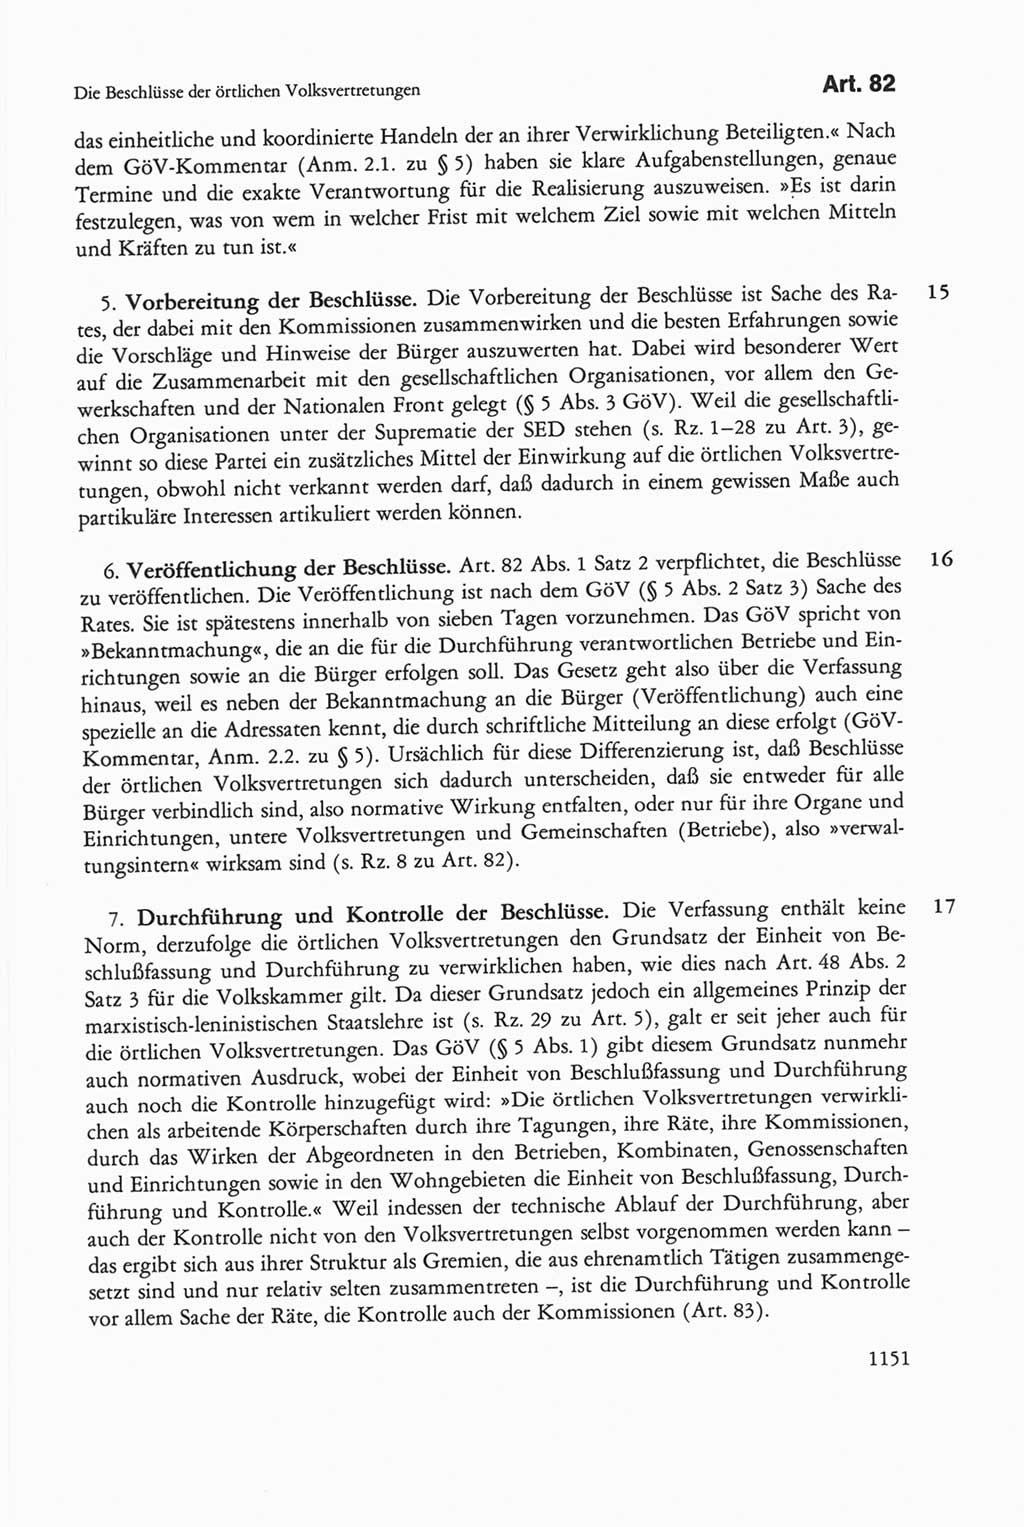 Die sozialistische Verfassung der Deutschen Demokratischen Republik (DDR), Kommentar mit einem Nachtrag 1997, Seite 1151 (Soz. Verf. DDR Komm. Nachtr. 1997, S. 1151)